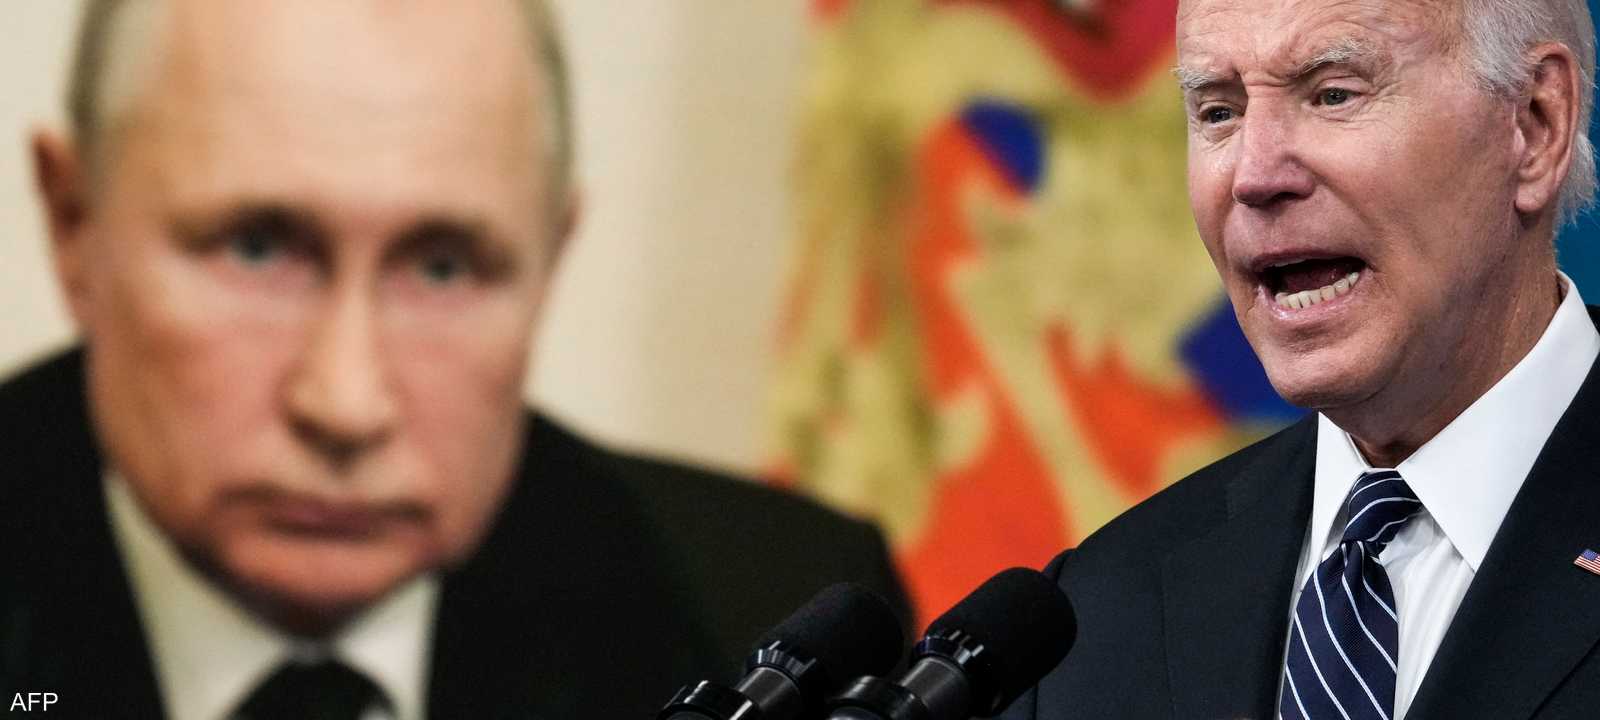 بايدن حذر بوتن من اللجوء إلى الخيار النووي